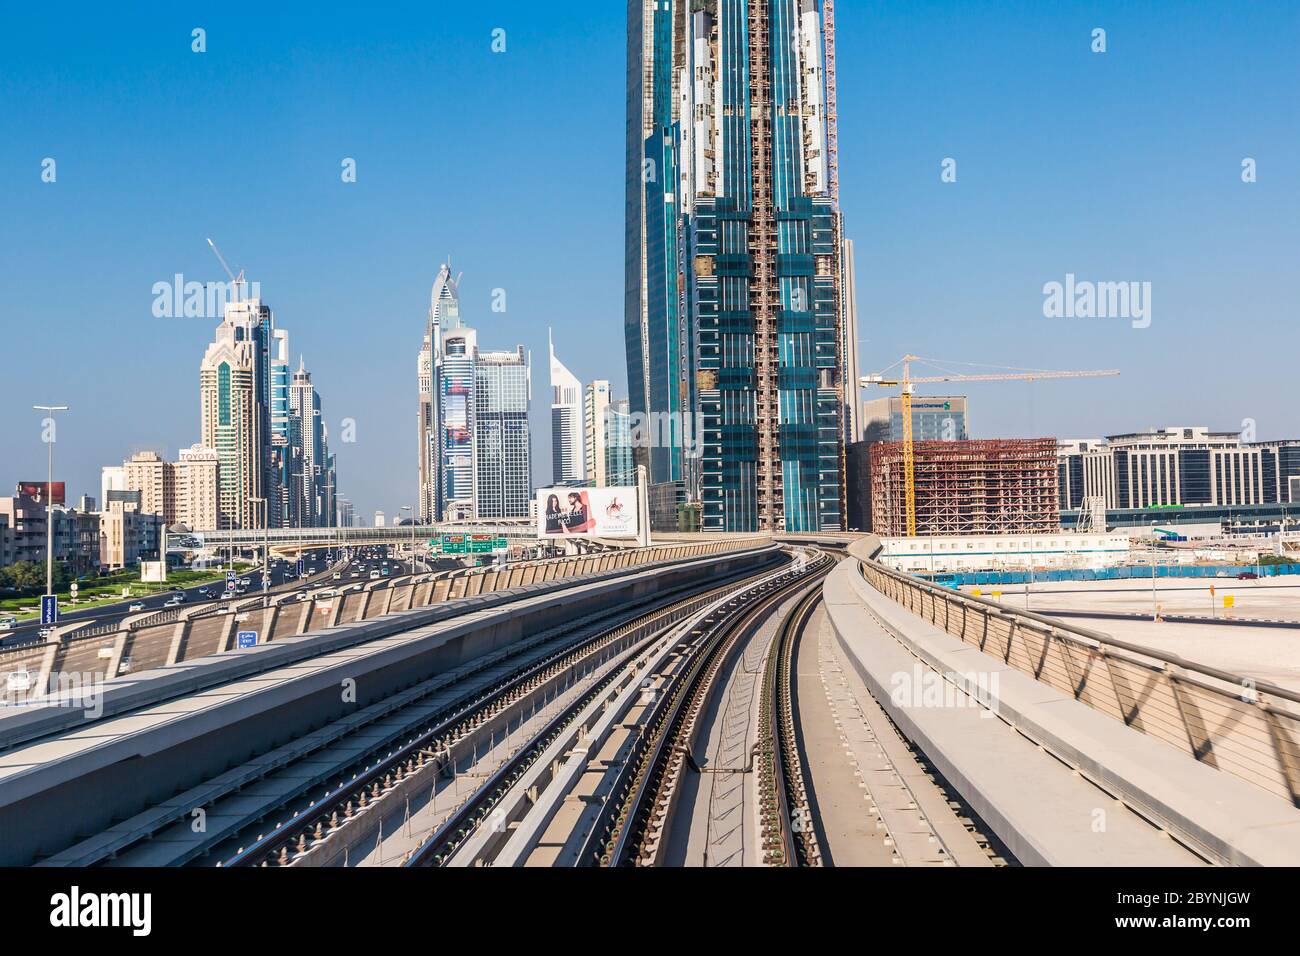 Dubai metro railway Stock Photo